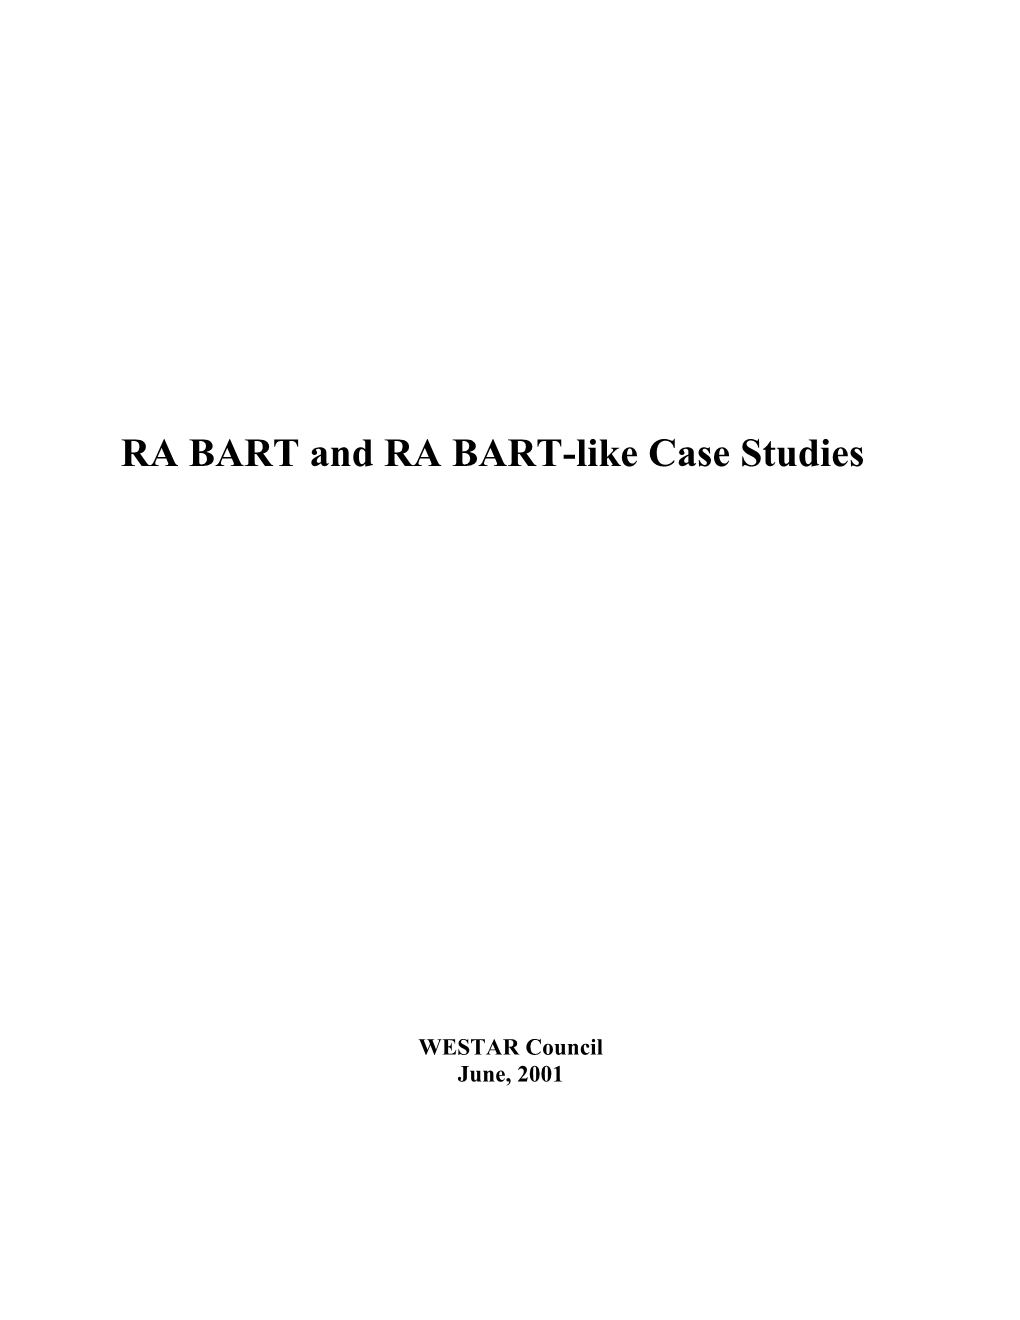 RA BART and RA BART-Like Case Study